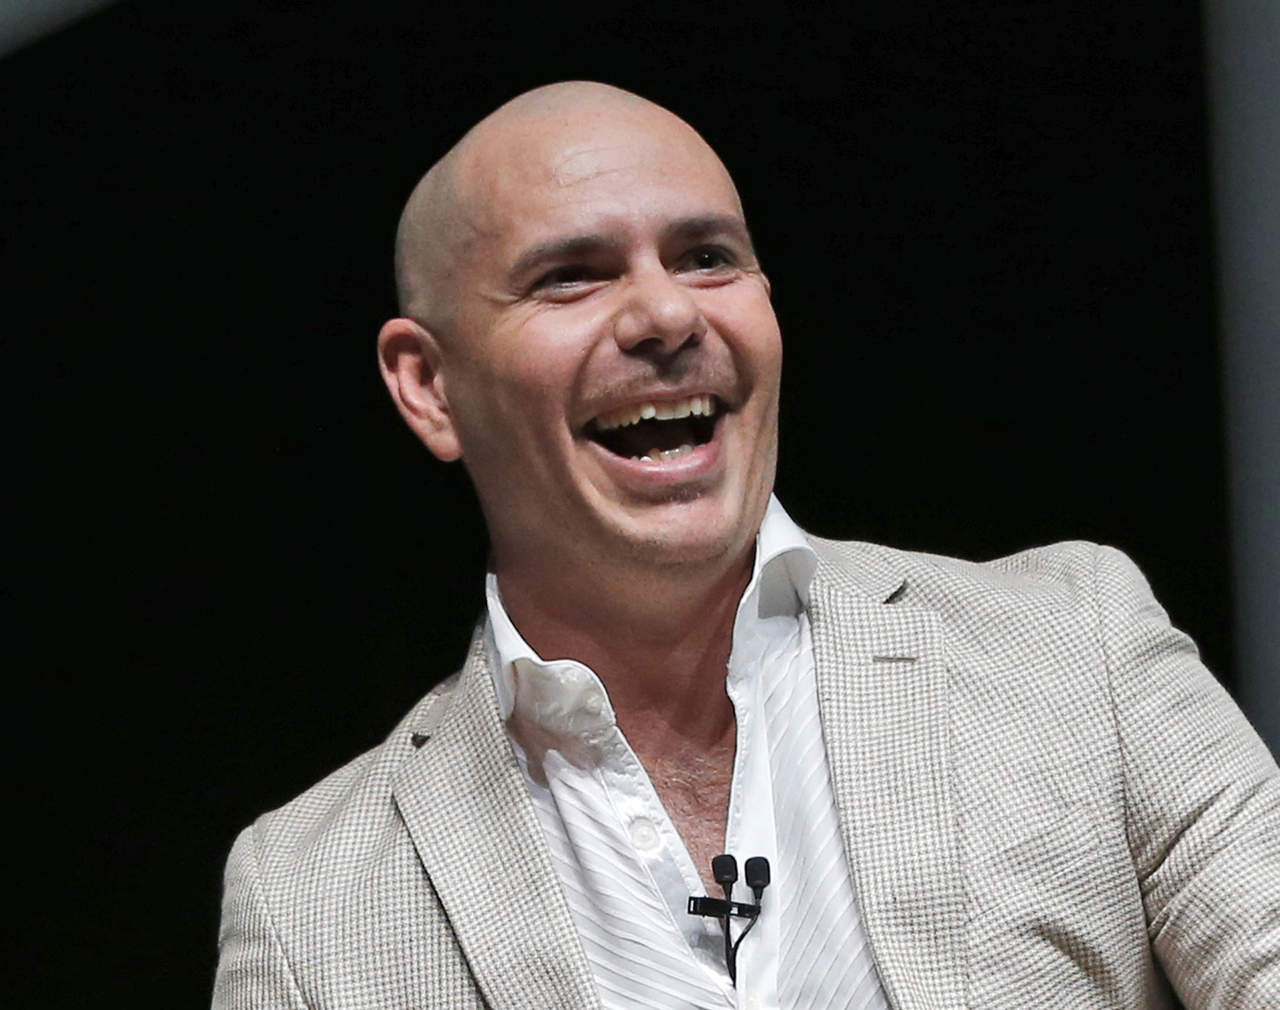 'Ha sido un honor representar a Miami y al Estado Soleado. He llevado a Miami y Florida por todo el mundo, mucho antes de cualquier contrato y lo seguiré haciendo', escribió Pitbull en sus redes sociales. (ARCHIVO)
